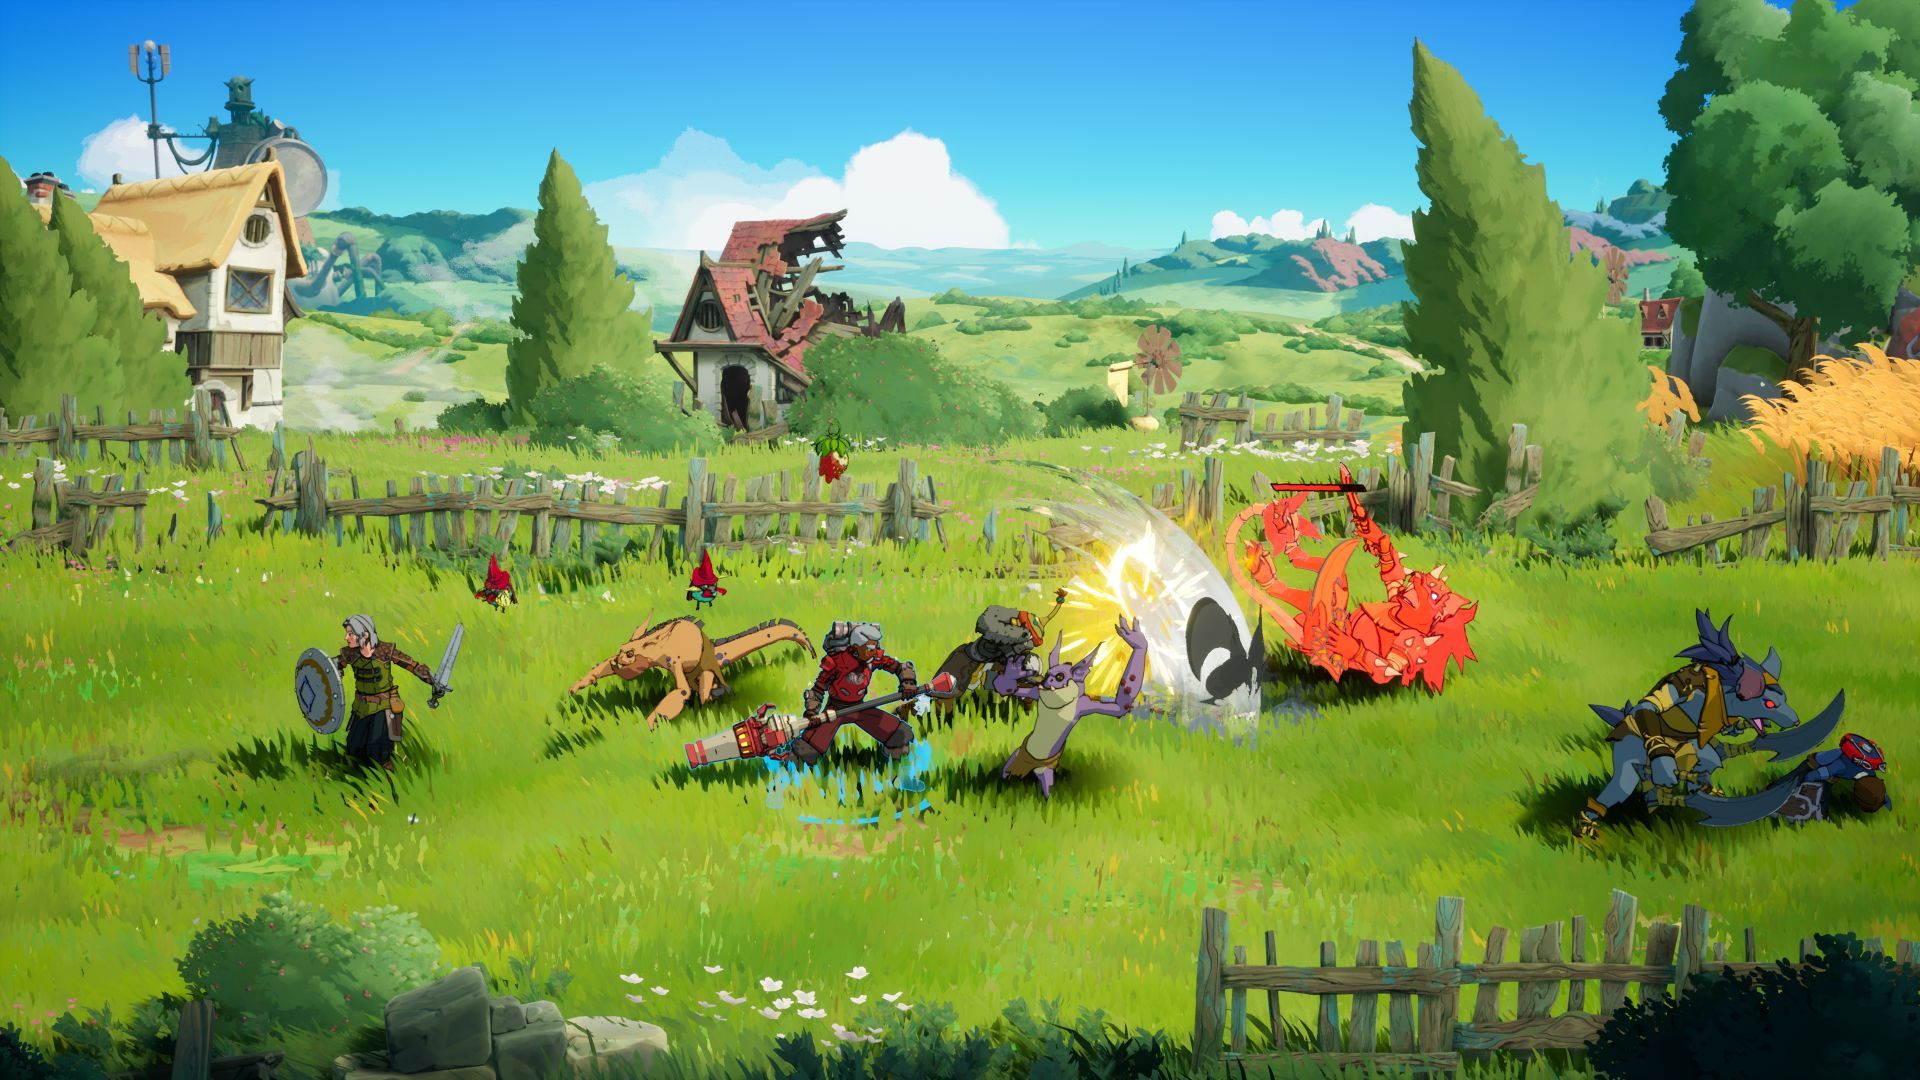 Towerborne action-adventure-spillet udvikles på en sådan måde, at udvikleren "hurtigt kan fylde" spillet med nyt indhold.